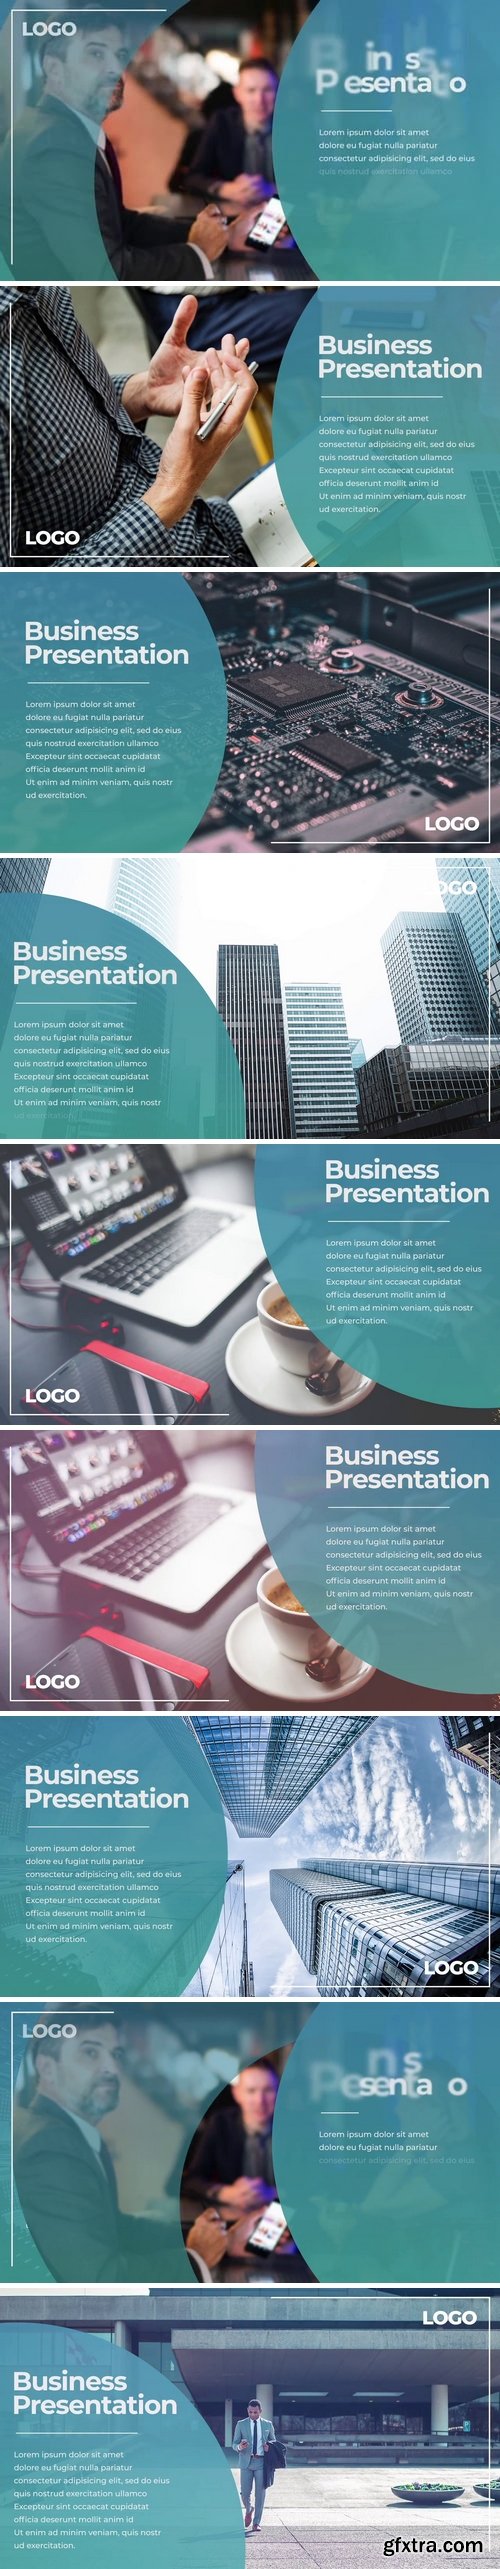 MotionArray Business Presentation 165044